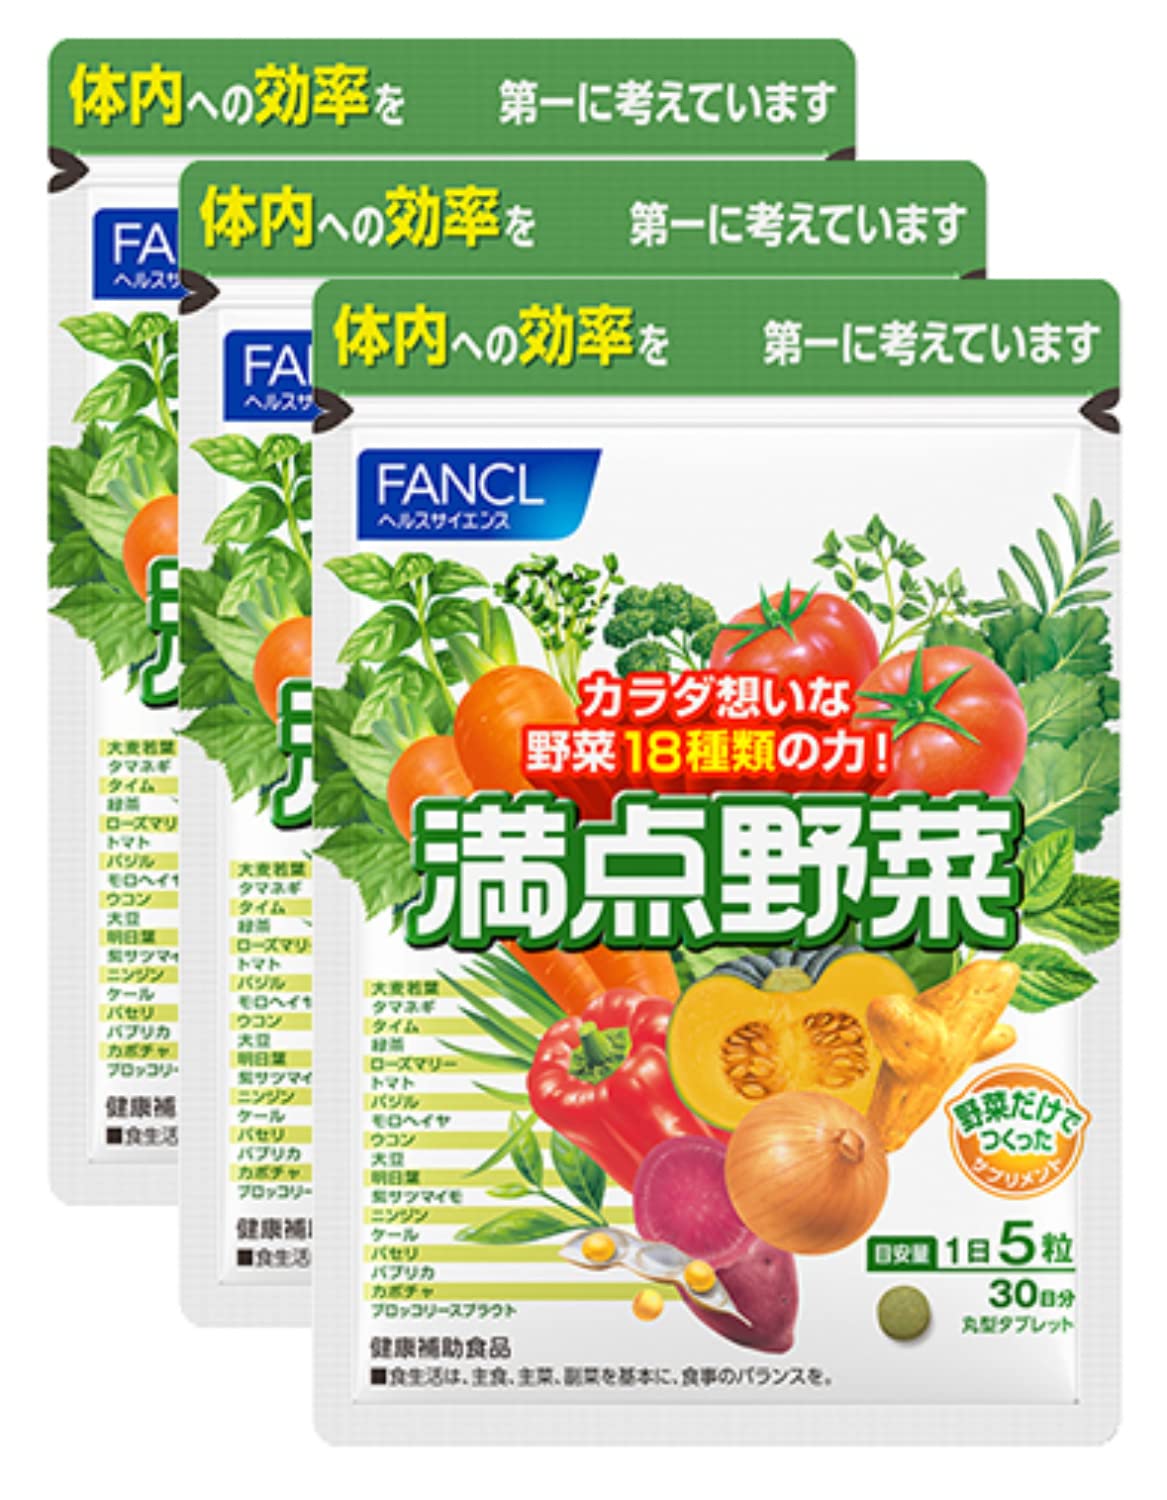 ファンケル (FANCL) (新) 満点野菜 90日分 (30日分×3袋) [ 健康補助食品 ] サプリ (健康維持/野菜の成分補給/クロロフィル) 野菜 錠剤